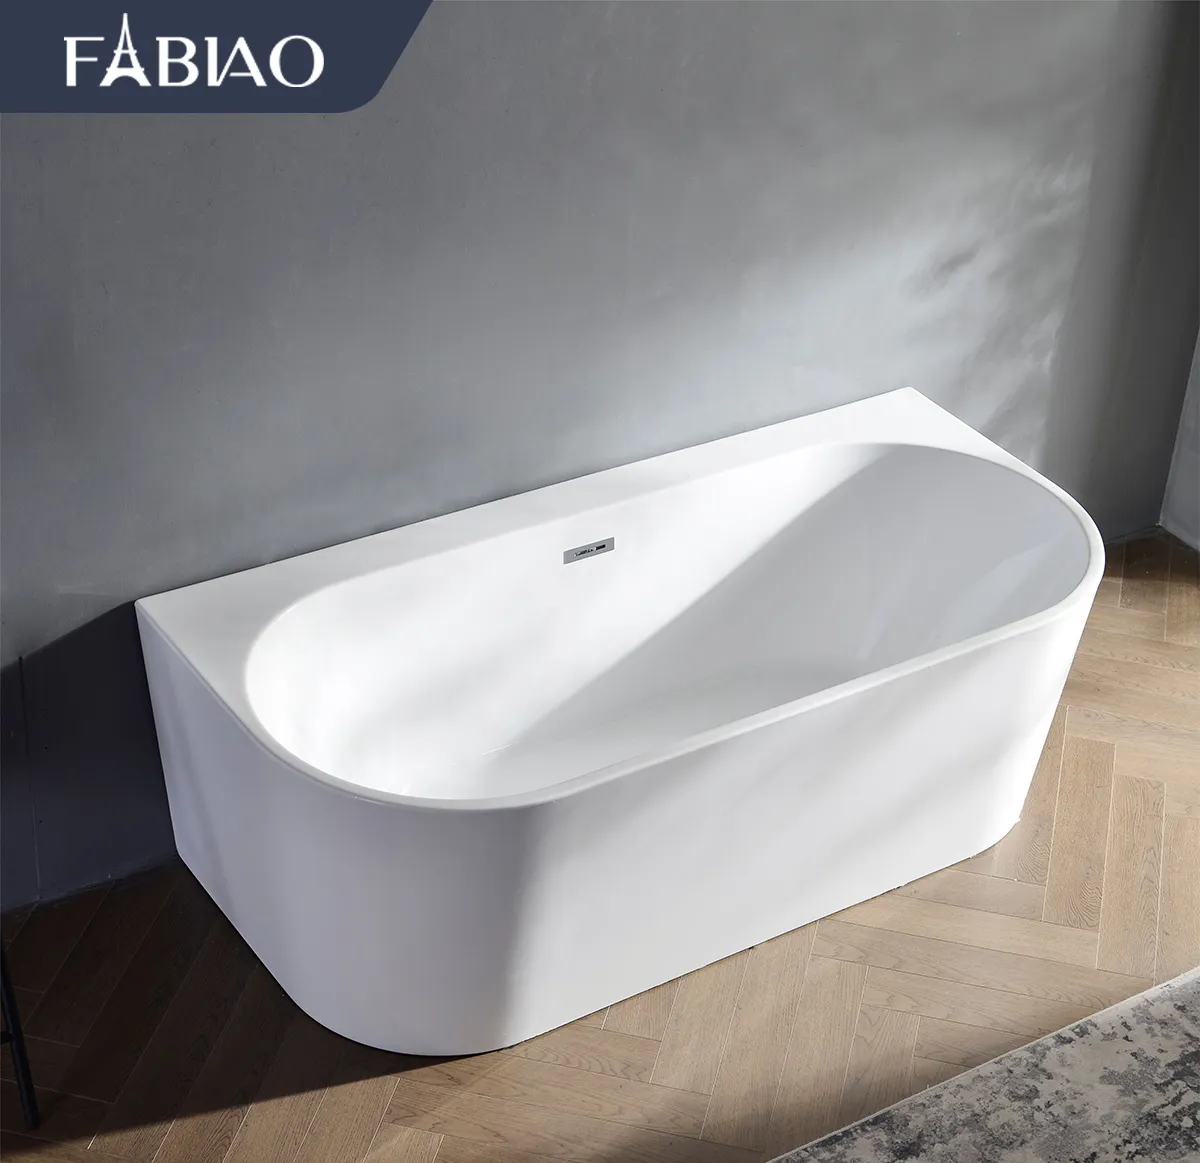 파비아오 쿠베 1.5m,1.6m,1.7m 호주 표준 욕조 담그기 기능과 저렴한 아크릴 독립형 욕조